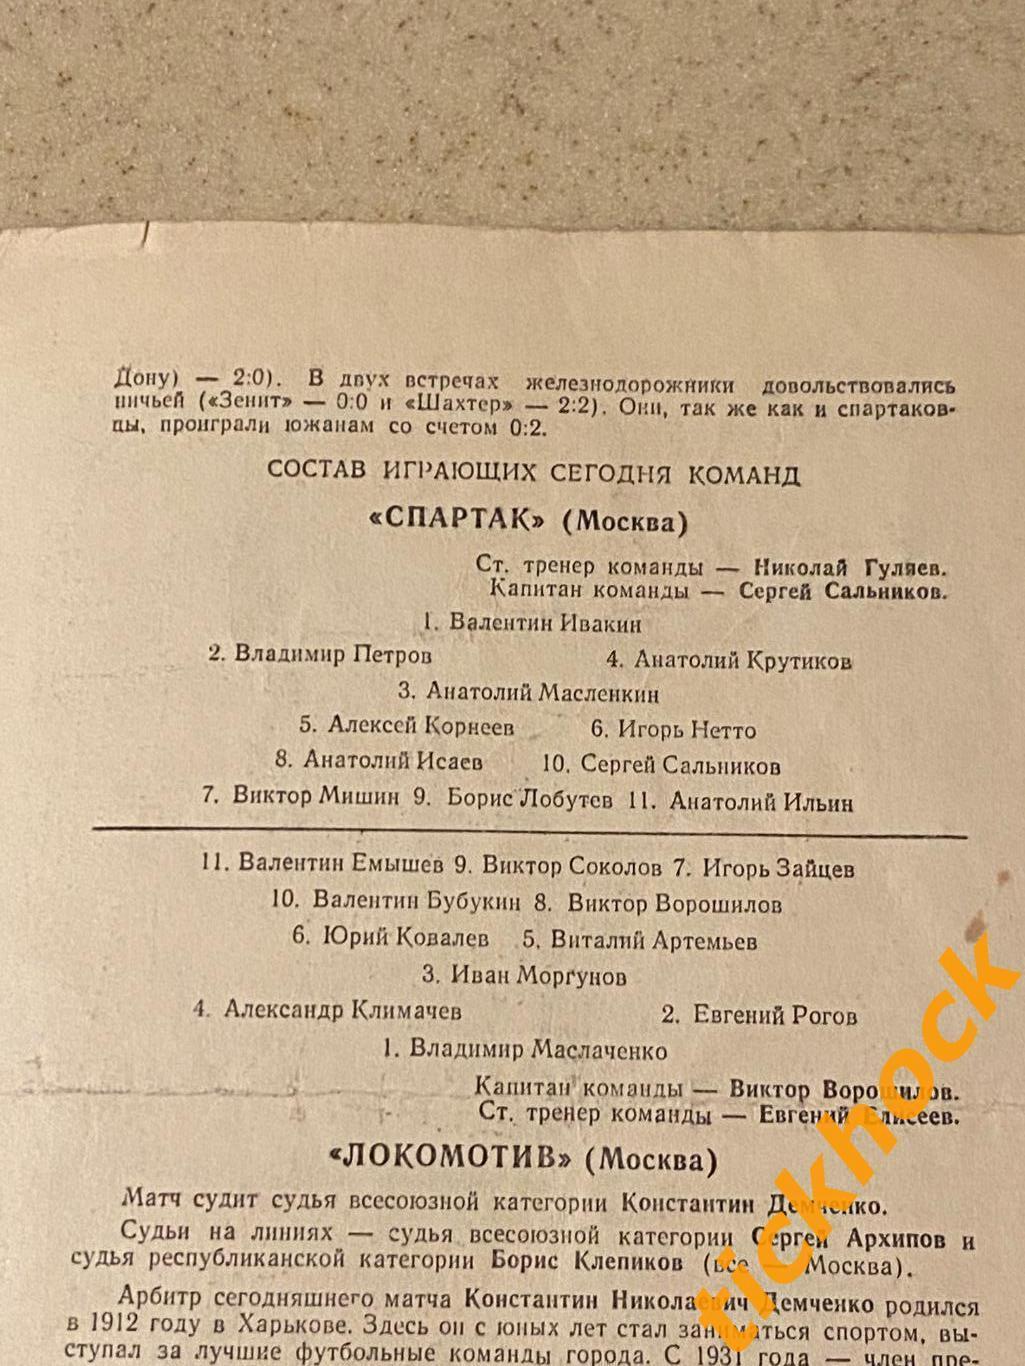 Спартак Москва - Локомотив Москва 15.10.1959 Первенство СССР - SY 1